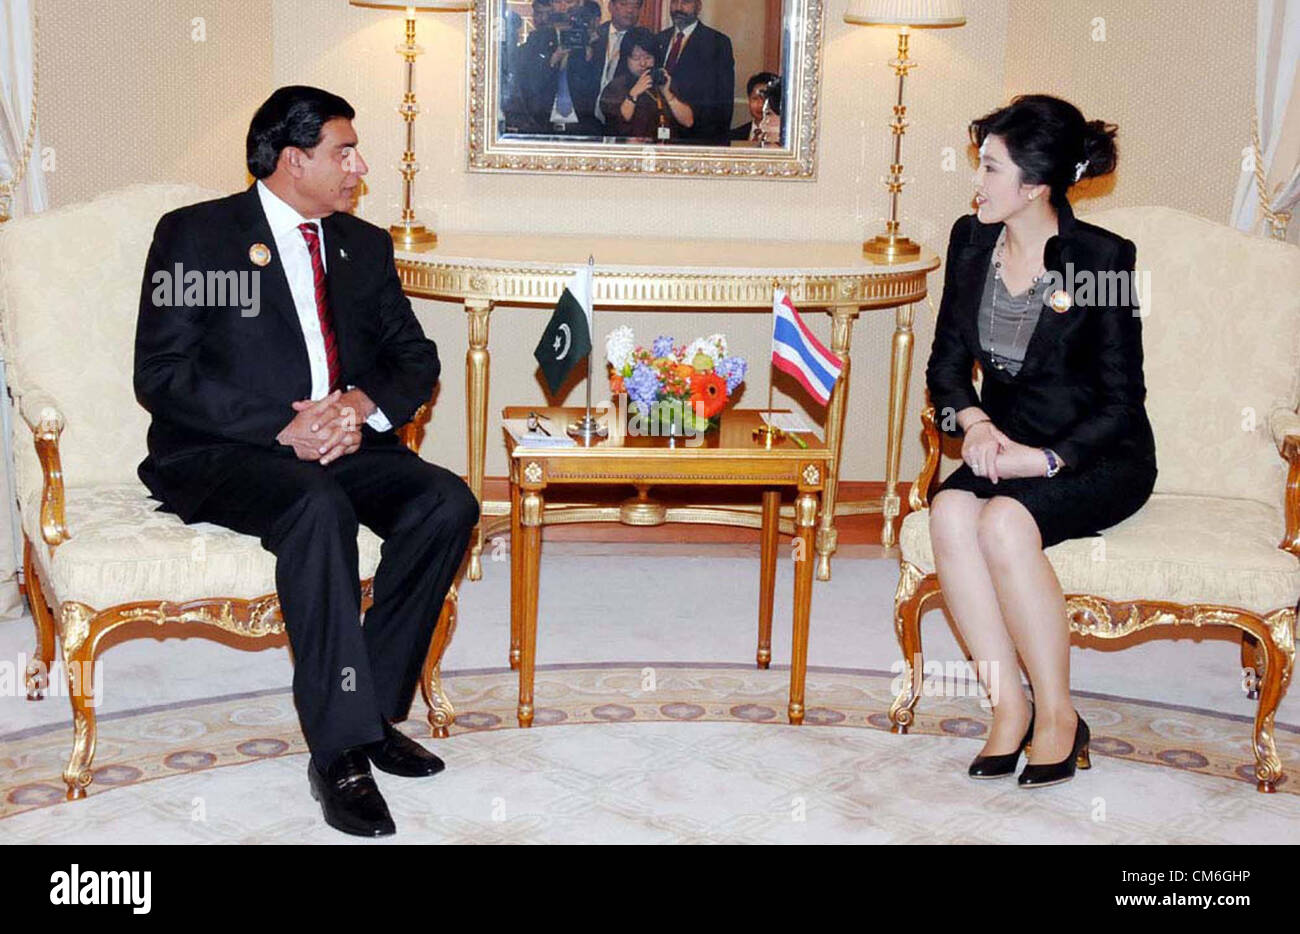 Premierminister von Pakistan, tauscht Raja Pervez Ashraf Ansichten mit Yingluck Shinawatra, Ministerpräsident des Königreichs Thailand während der Tagung an der Seitenlinie des asiatischen Zusammenarbeit Dialog (ACD) Gipfel im Bayan Palace in Kuwait-Stadt am Dienstag, 16. Oktober 2012 Stockfoto